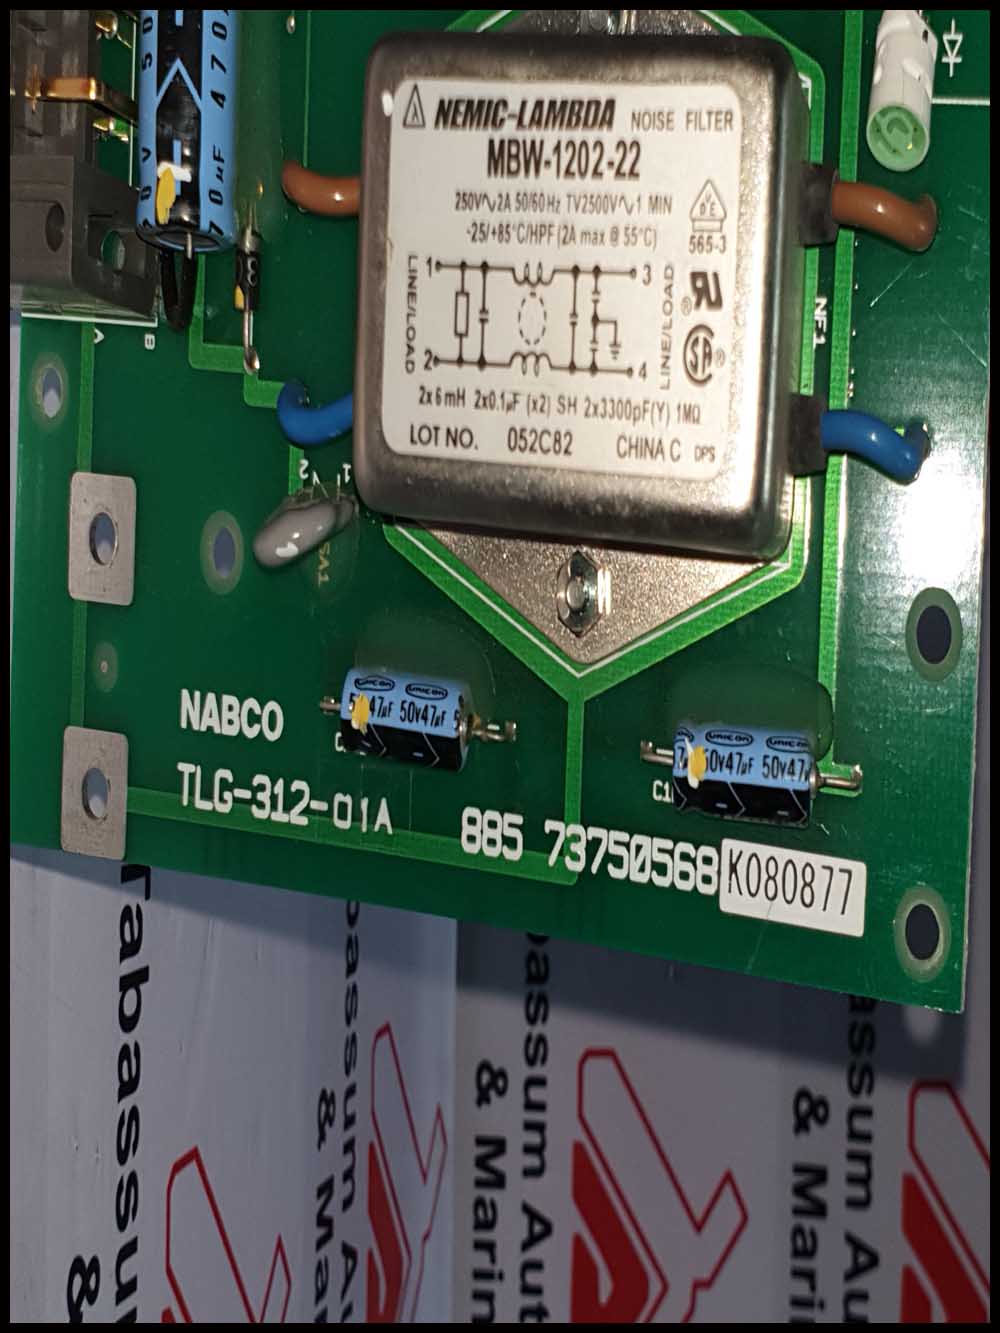 NABCO PCB CARD TLG-312-01A